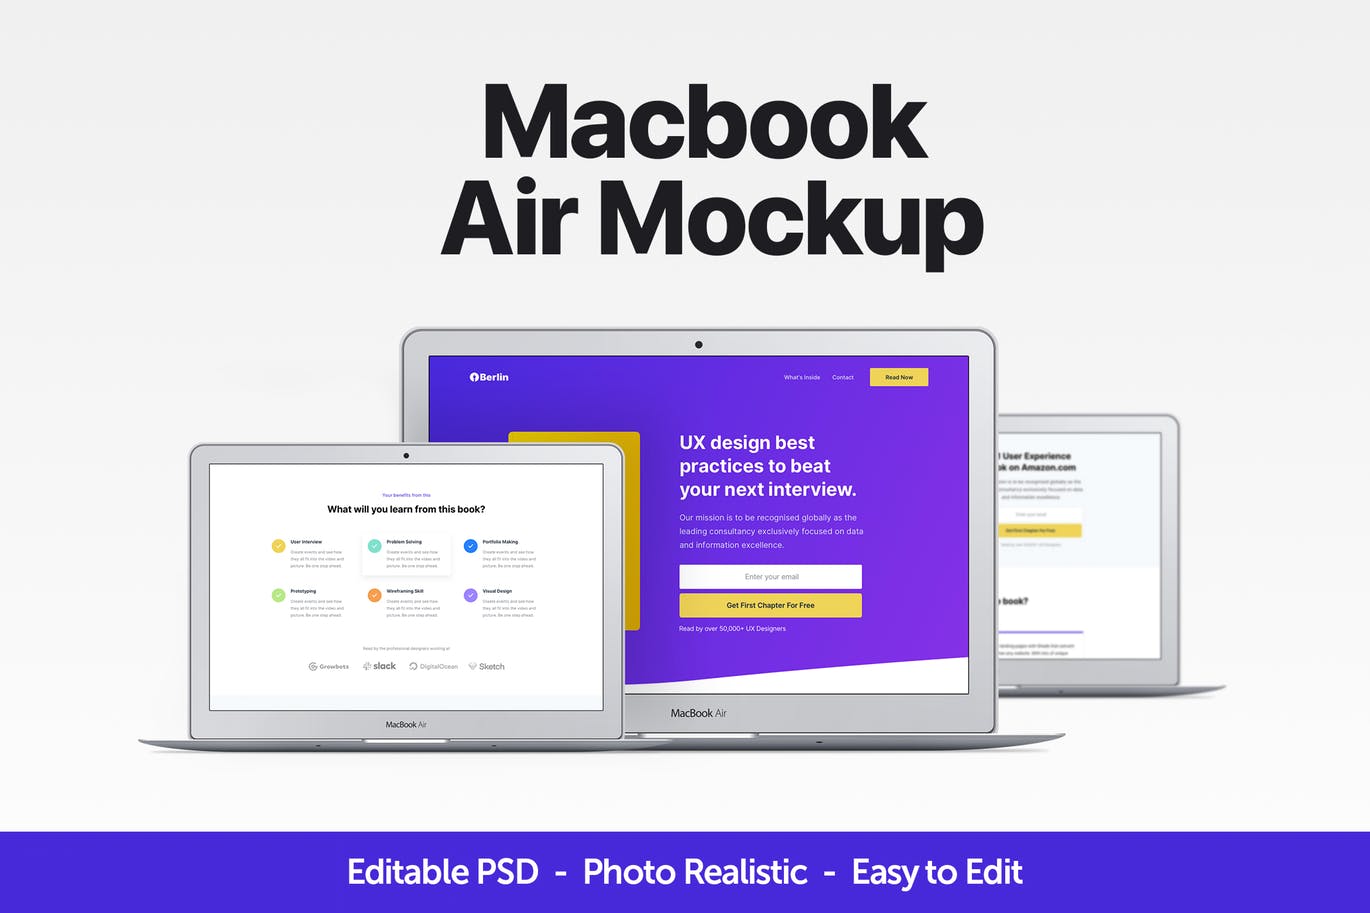 MacBook Air超极本电脑样机 Macbook Air Mockup插图